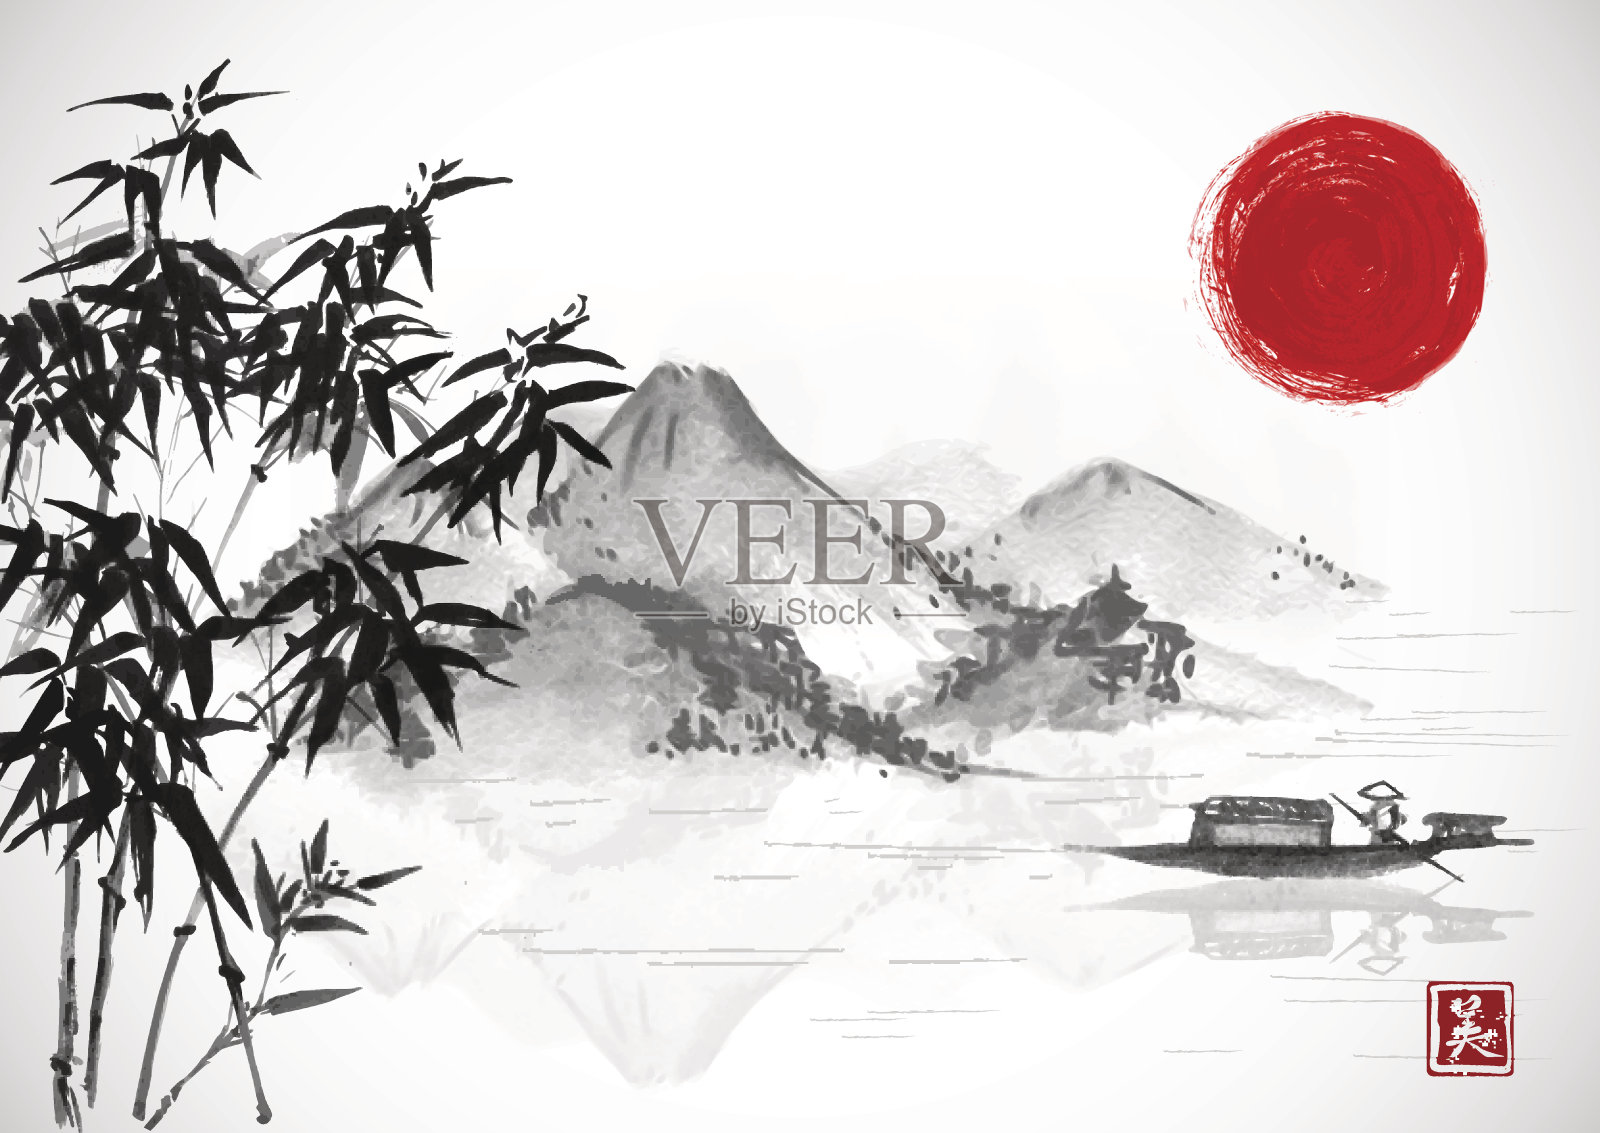 渔船，红日，岛与山。传统的东方水墨画粟娥、月仙、围棋。包含象形文字-美丽。插画图片素材